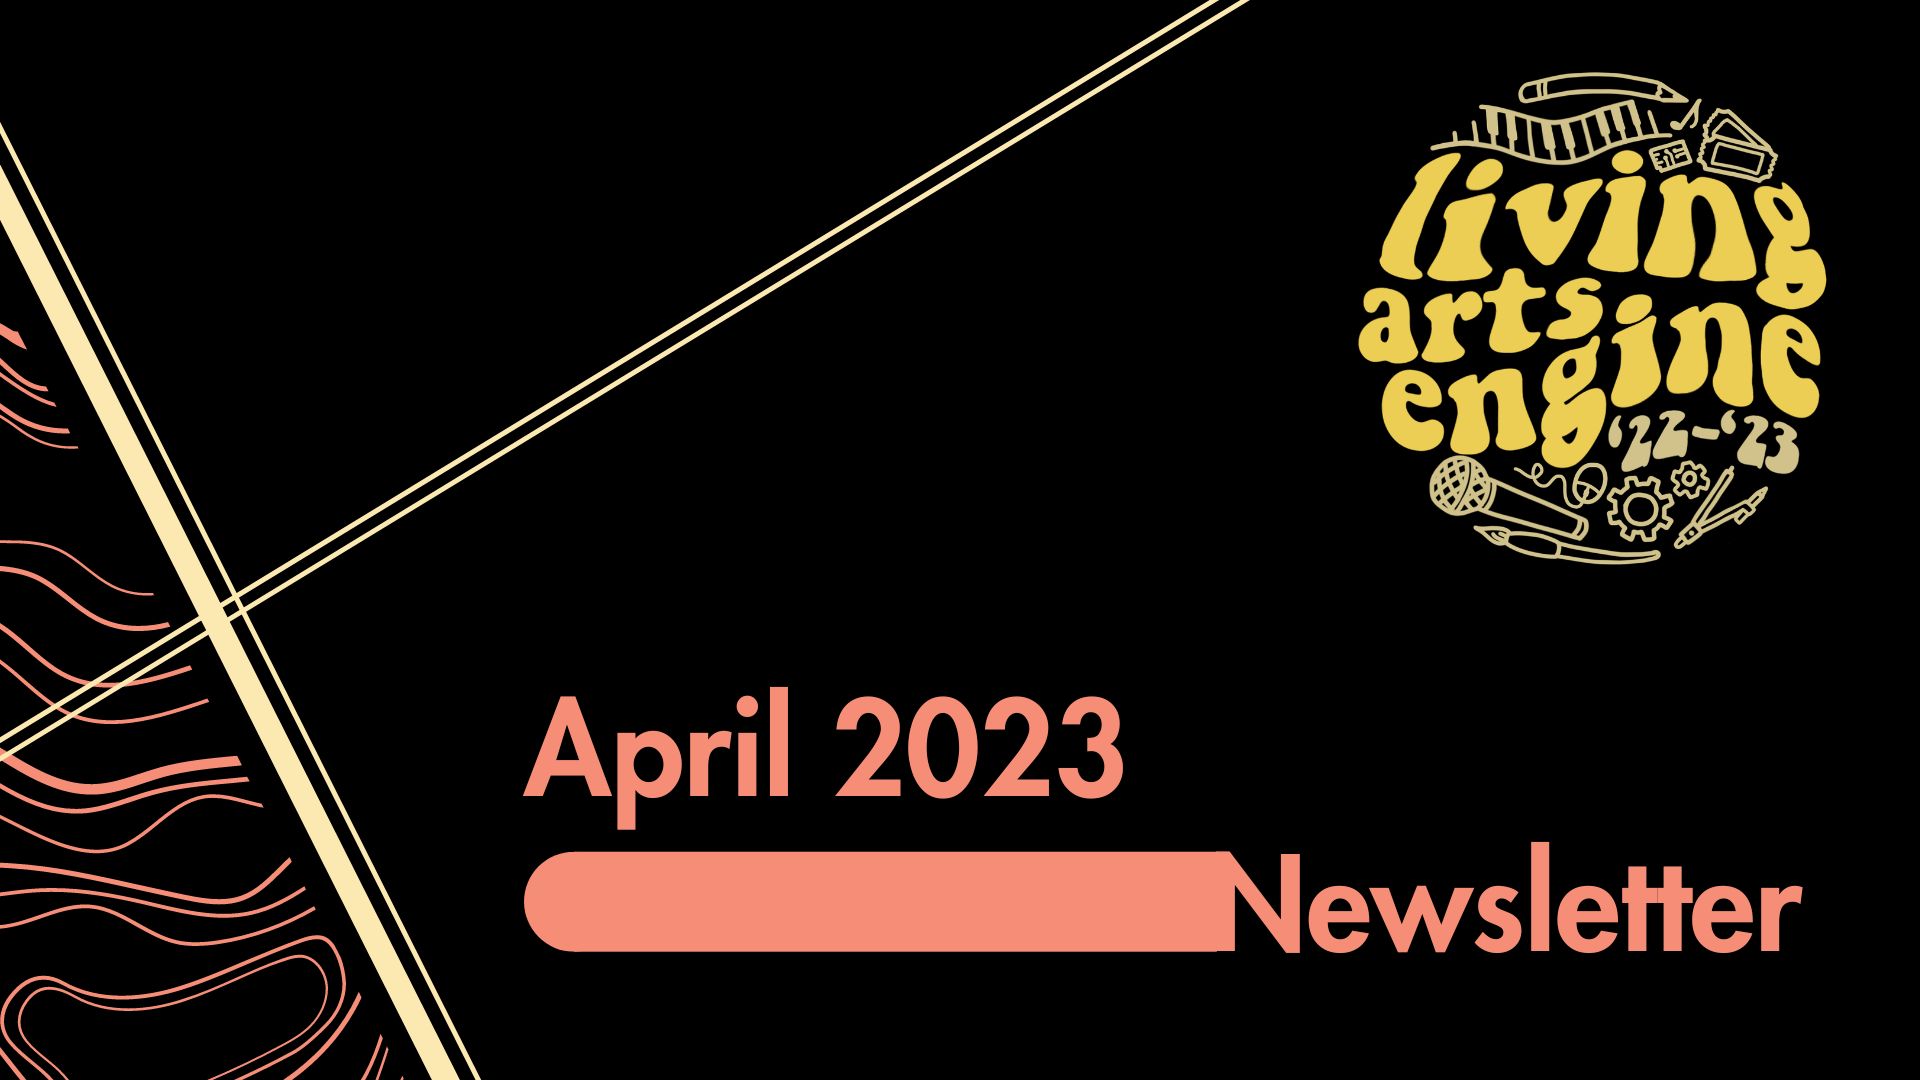 April 2023 Newsletter cover